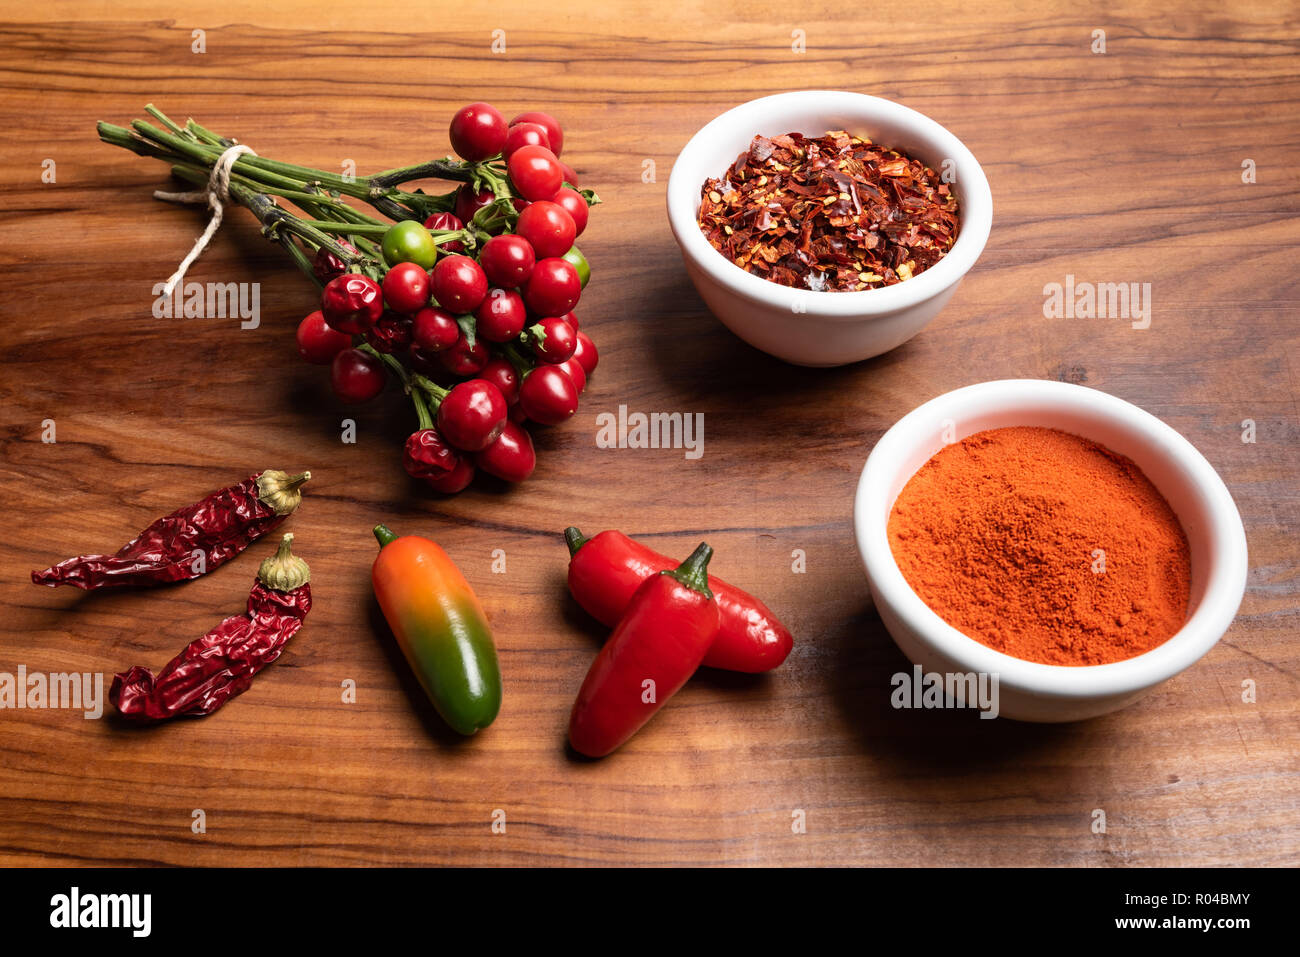 Gruppe von frischen und trockenen Peperoni mit Chilipulver und crushed Red Hot peppers auf einem rustikalen Holzmöbeln Hintergrund. Stockfoto